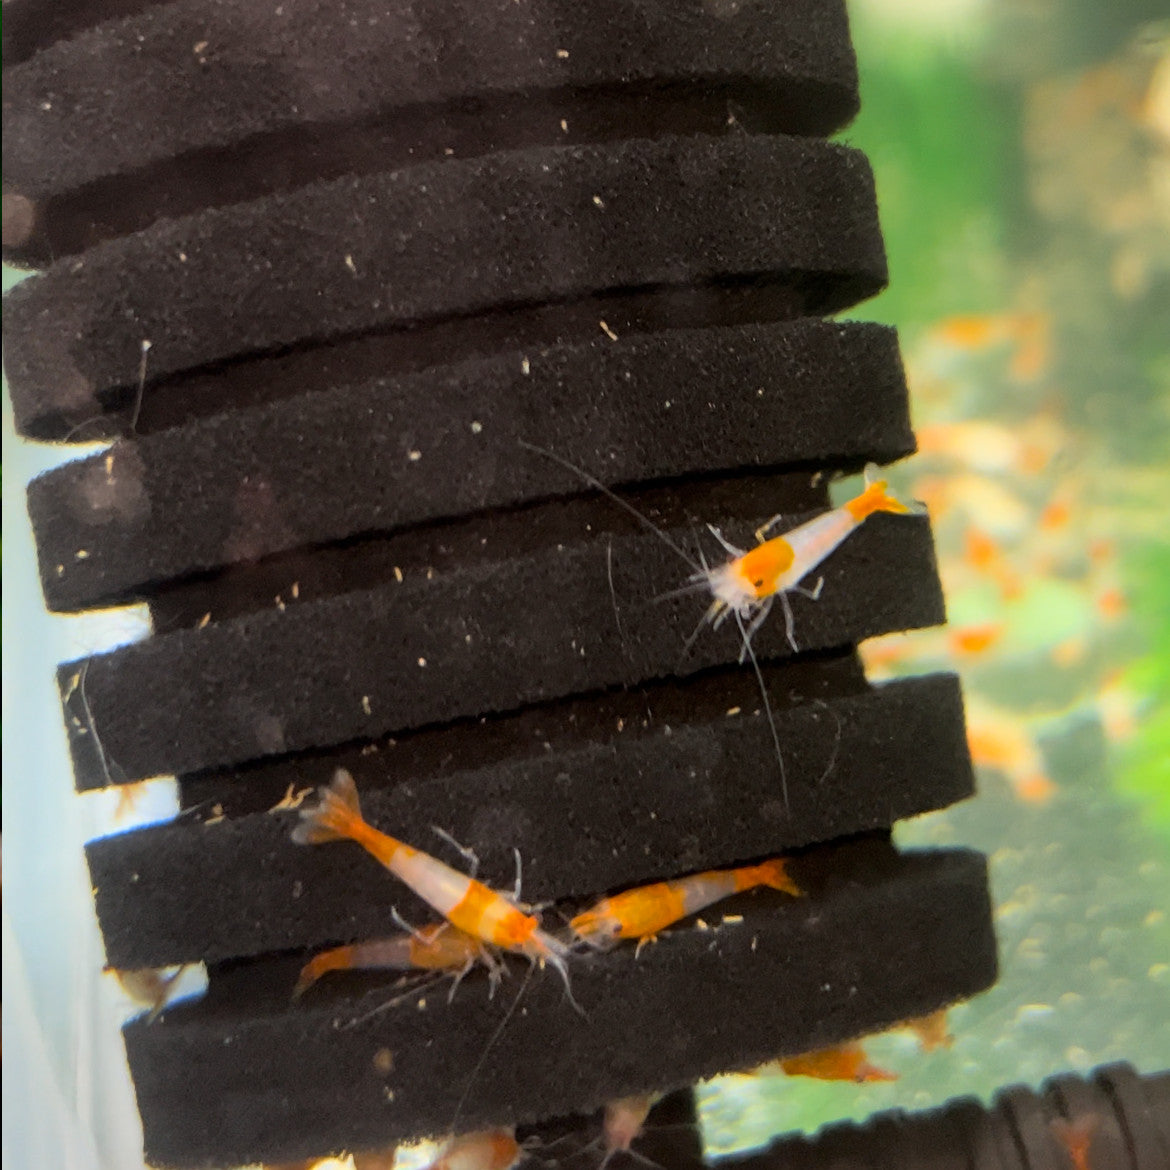 Orange Rili Shrimp